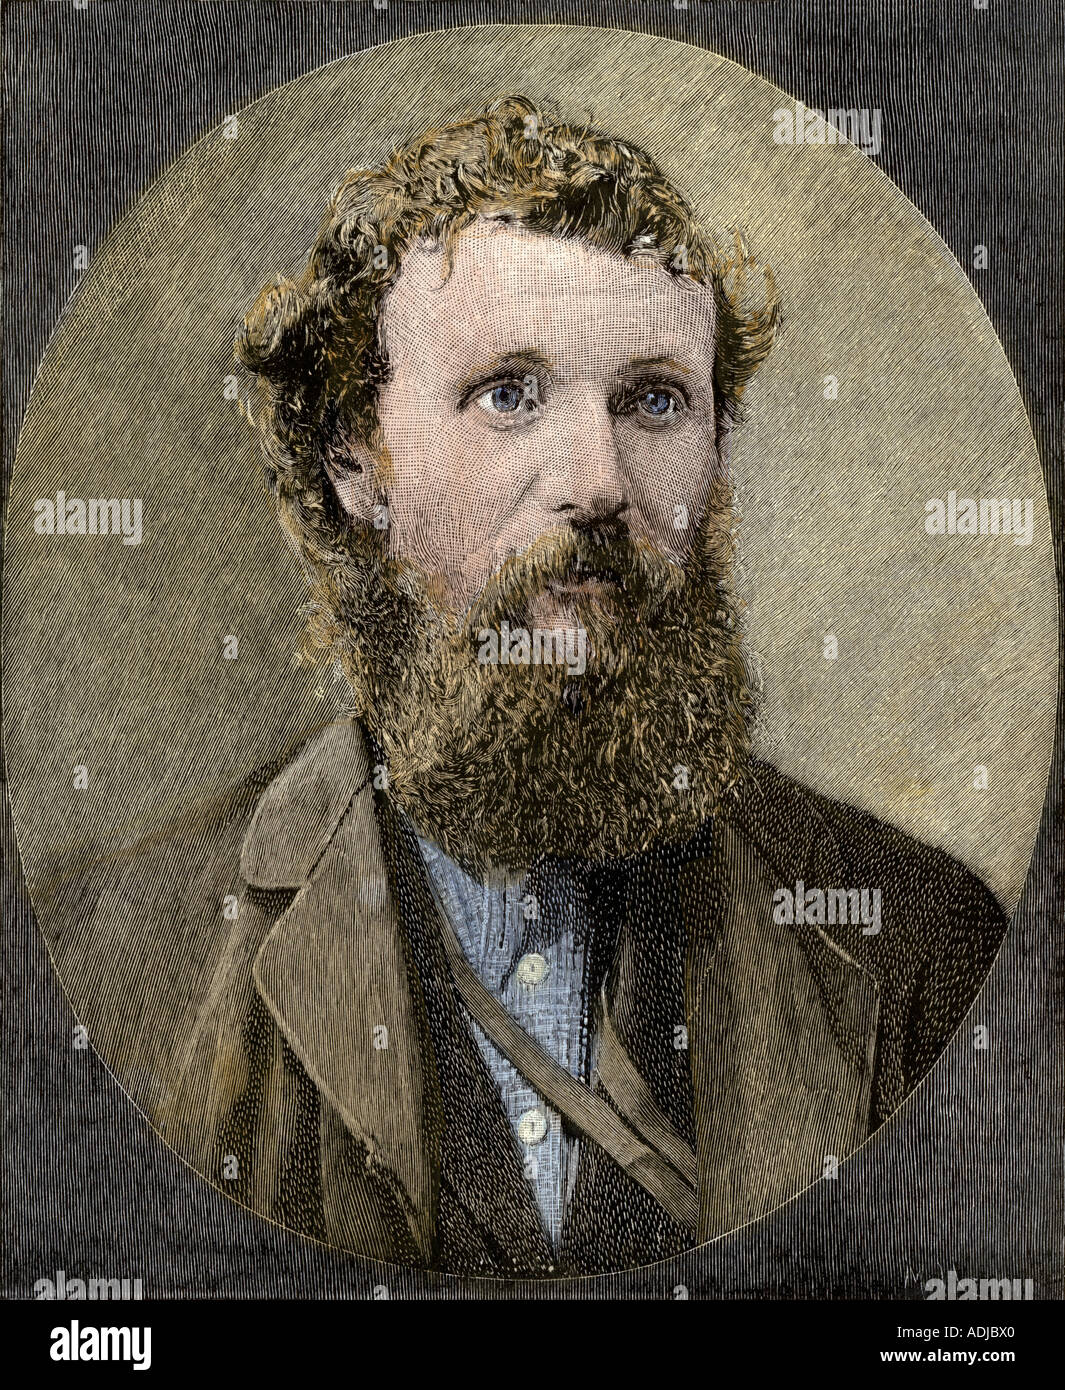 John Muir, fondateur du Sierra Club. À la main, gravure sur bois Banque D'Images